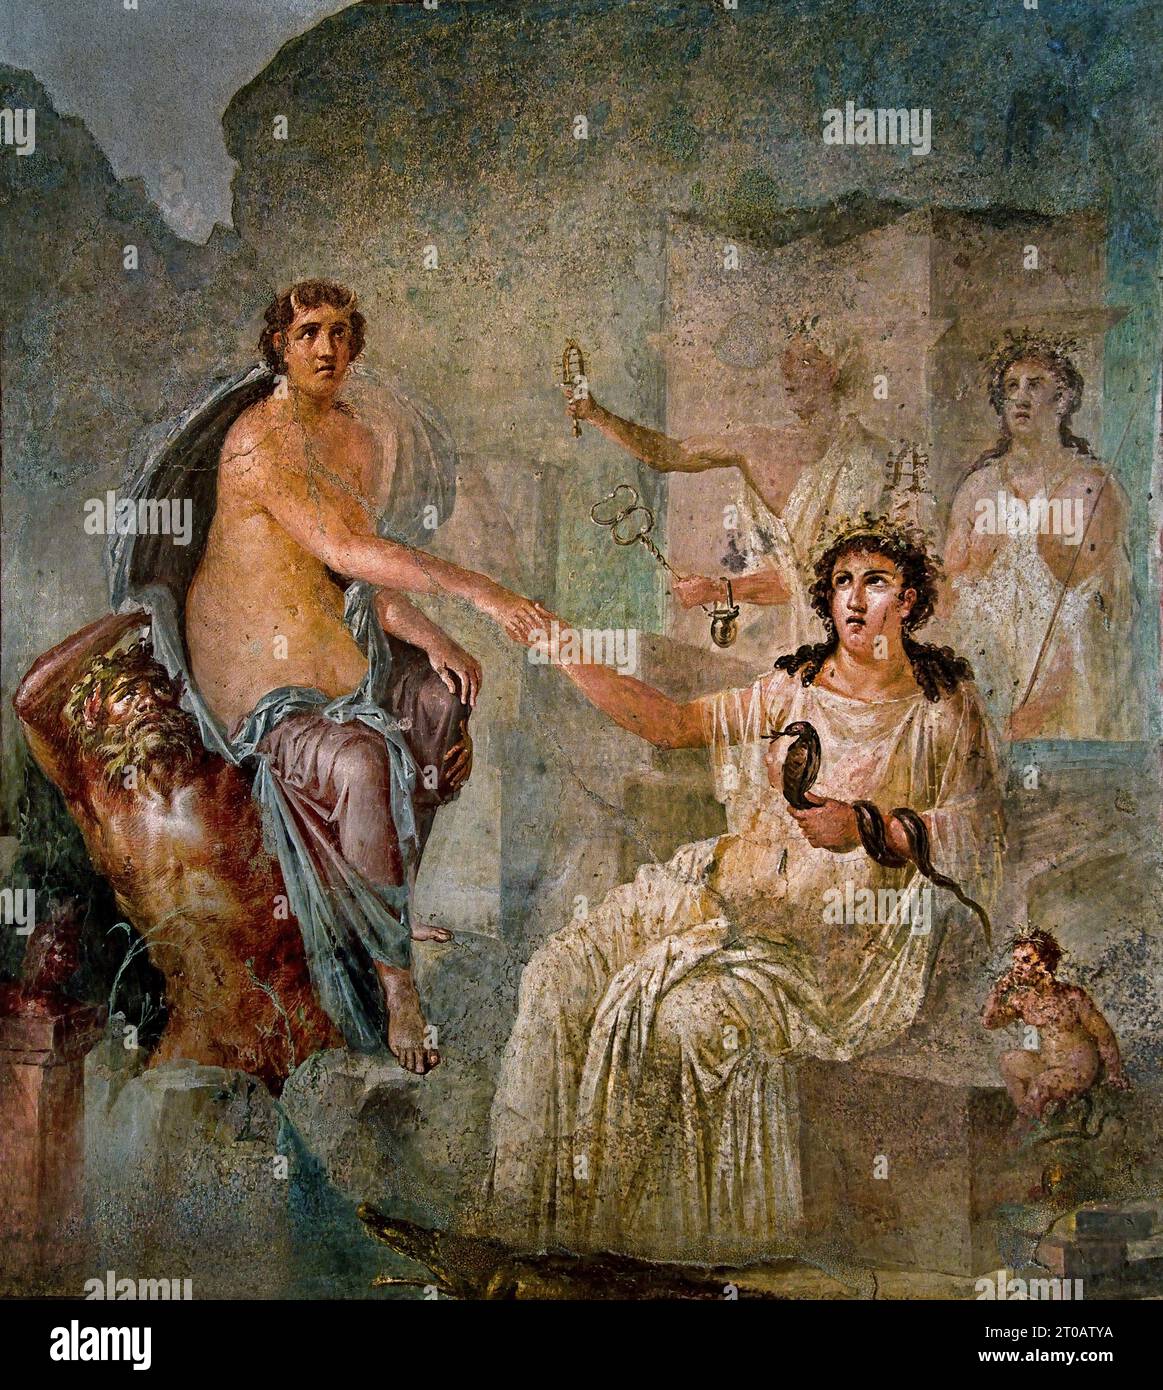 Jupiter e io. La città romana di fresco Pompei si trova vicino a Napoli, nella regione Campania. Pompei fu sepolta sotto 4-6 m di cenere vulcanica e pomice nell'eruzione del Vesuvio nel 79 d.C. Italia Foto Stock